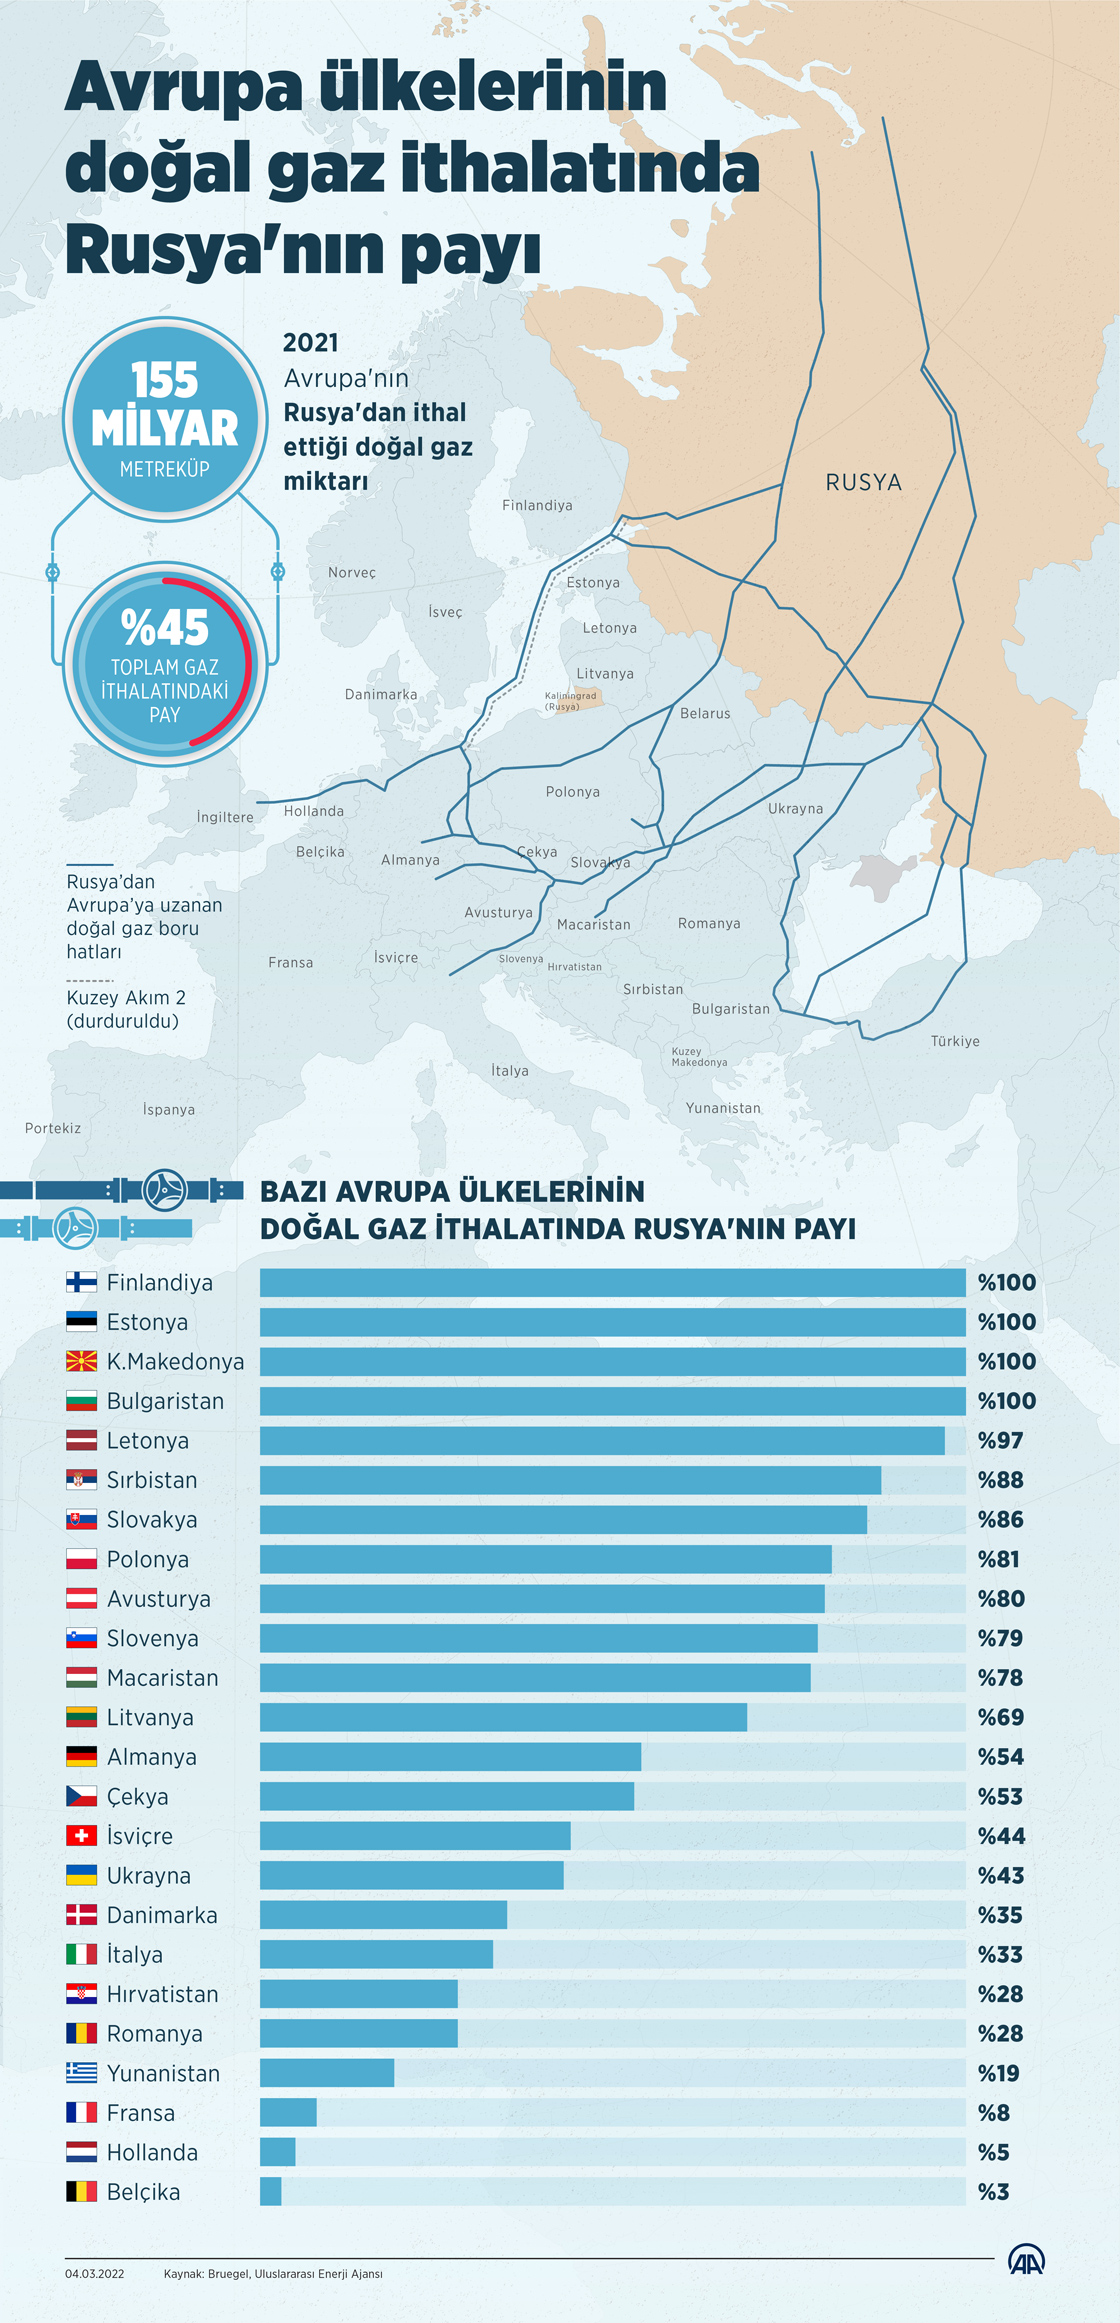 Avrupa ülkelerinin gaz ithalatında Rusya'nın payı